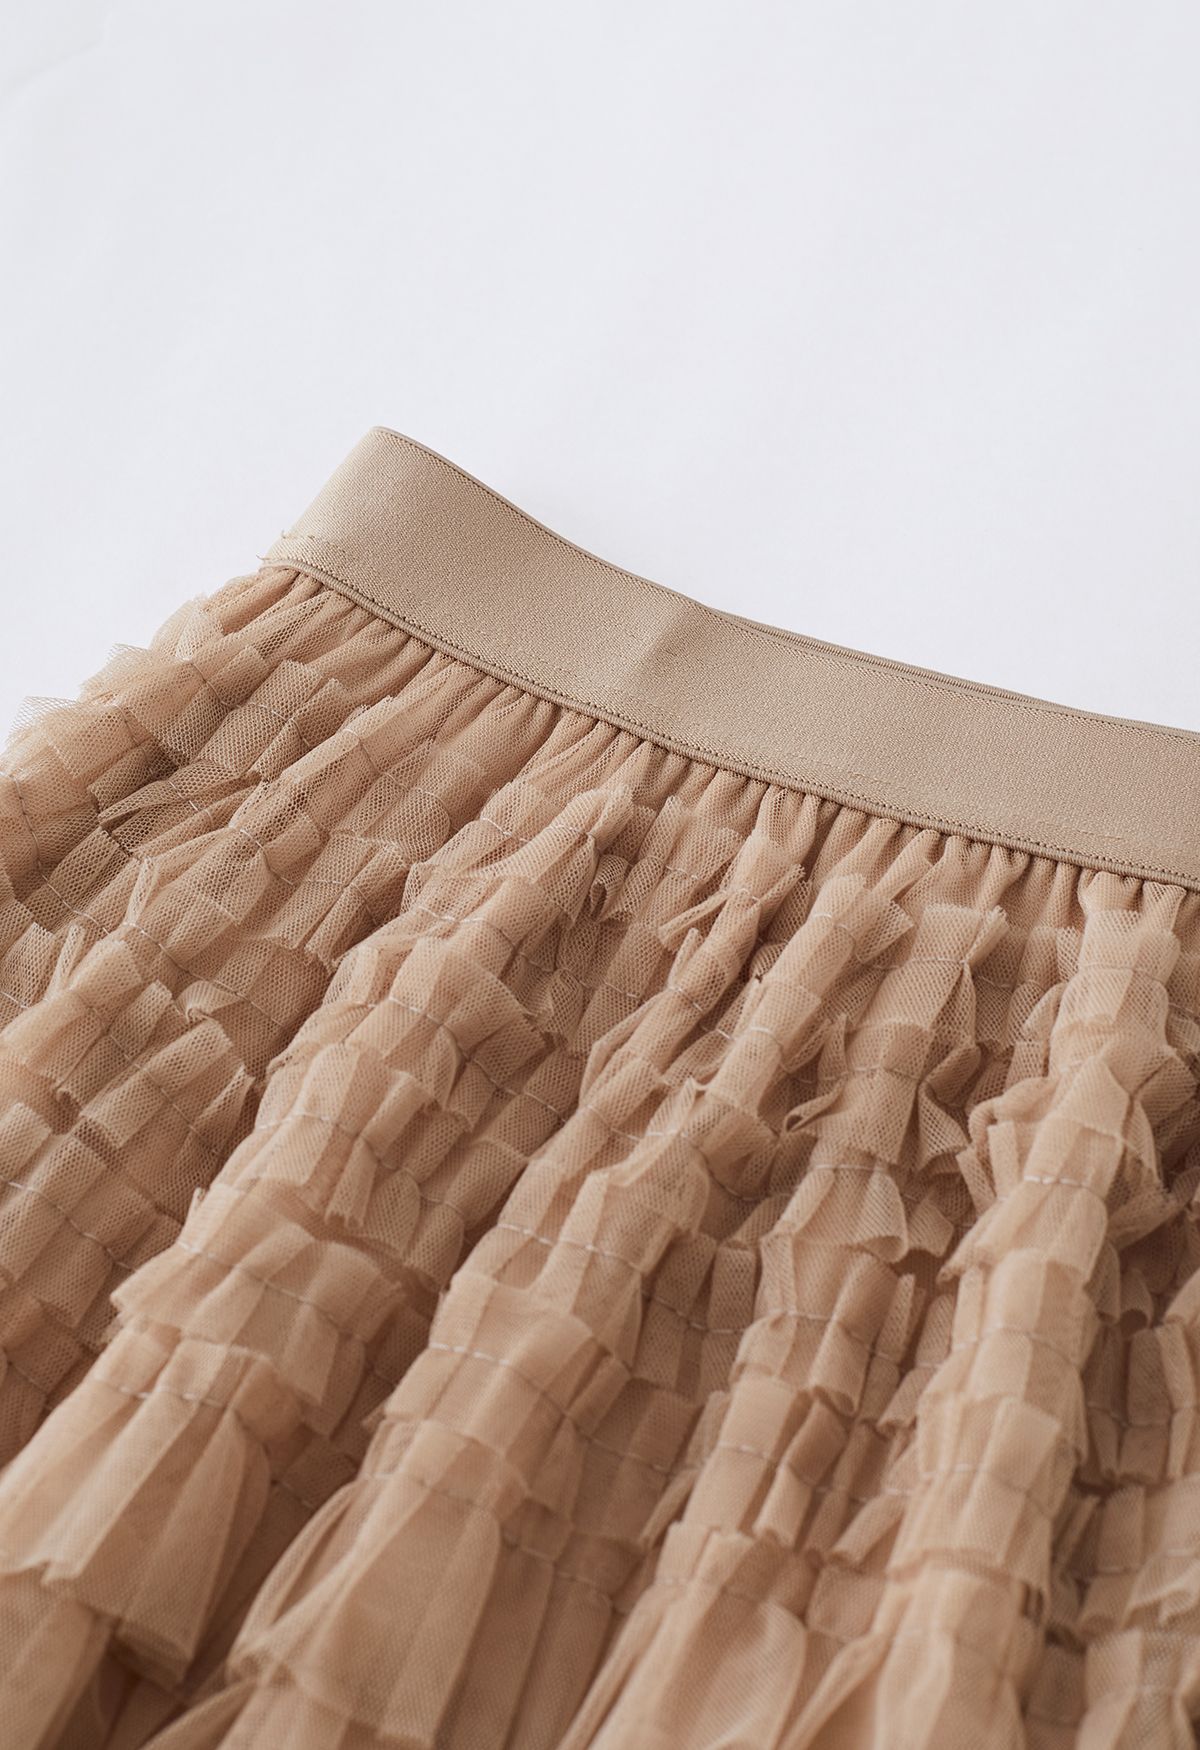 Swan Cloud Midi Skirt in Light Tan